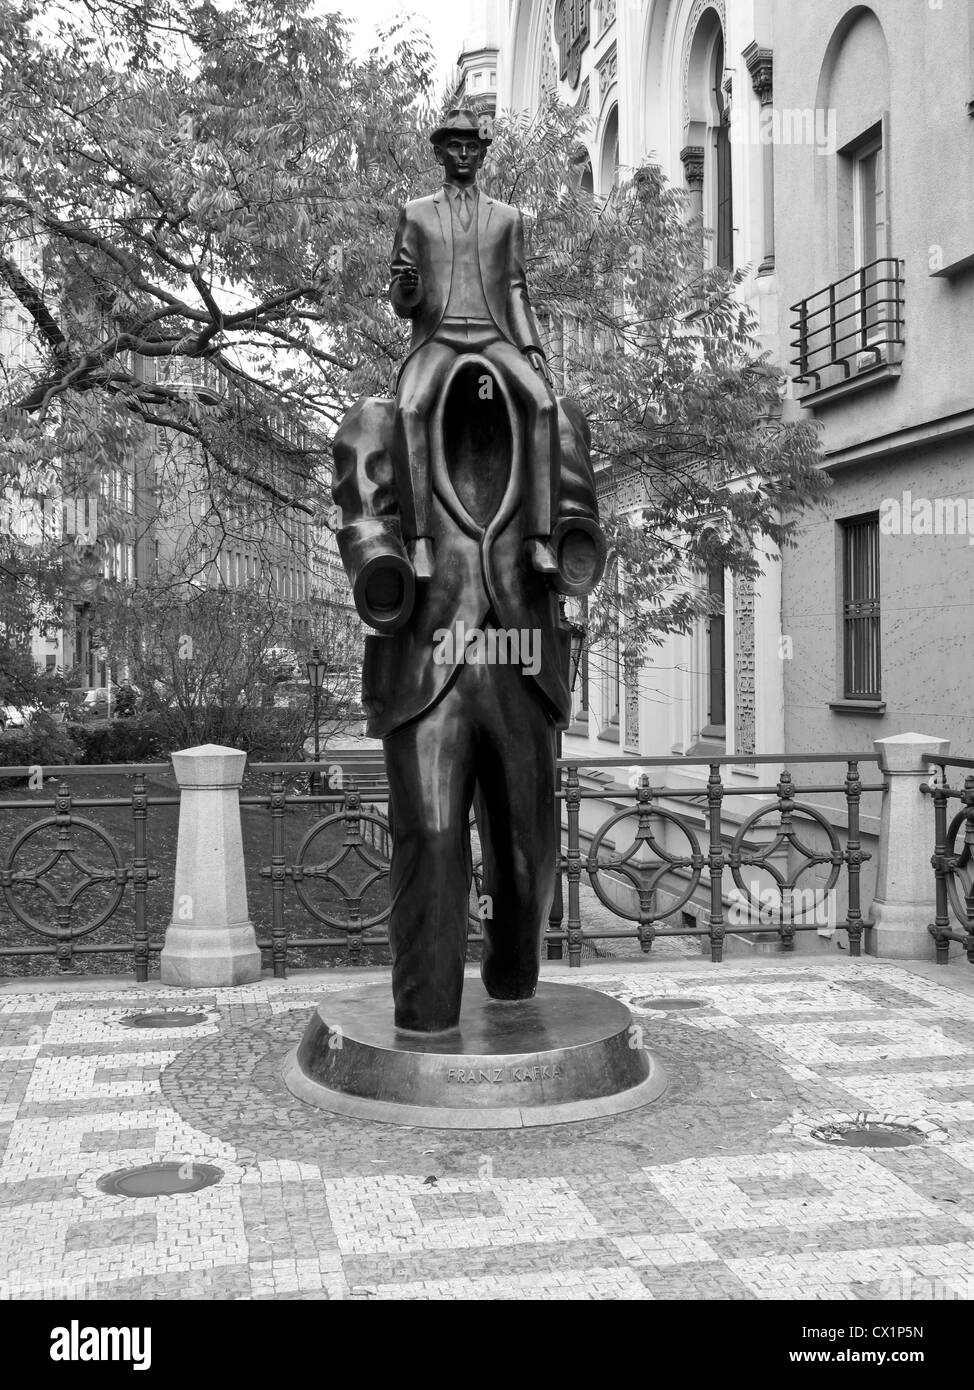 Estatua de Franz Kafka, en el antiguo barrio judío de Praga, República Checa, Europa Foto de stock